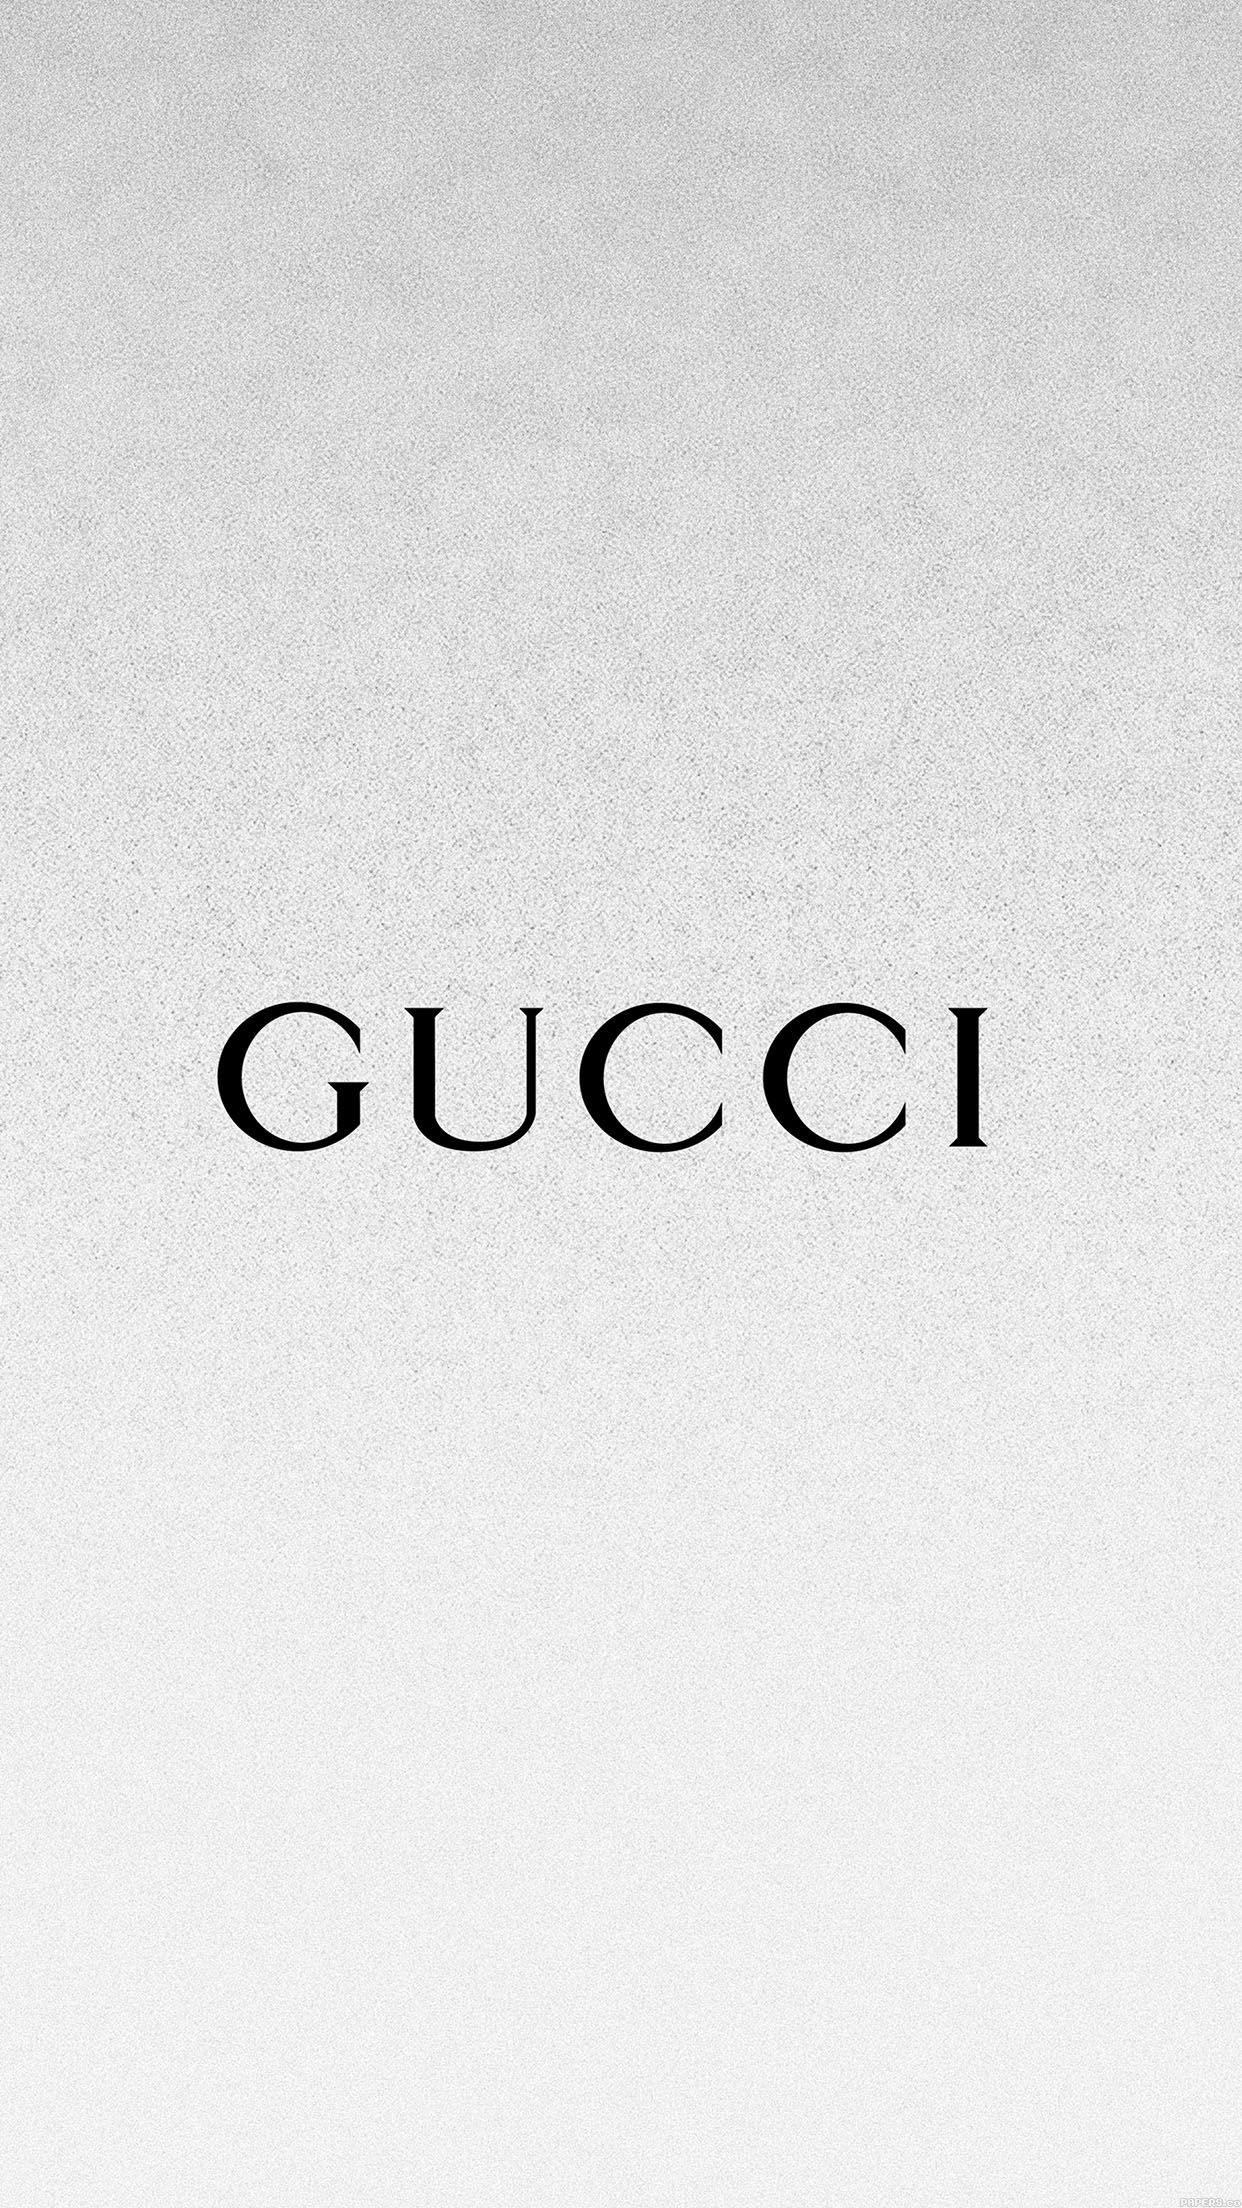 Gucci: Monochrome, Company's logo, The luxury brand. 1250x2210 HD Wallpaper.